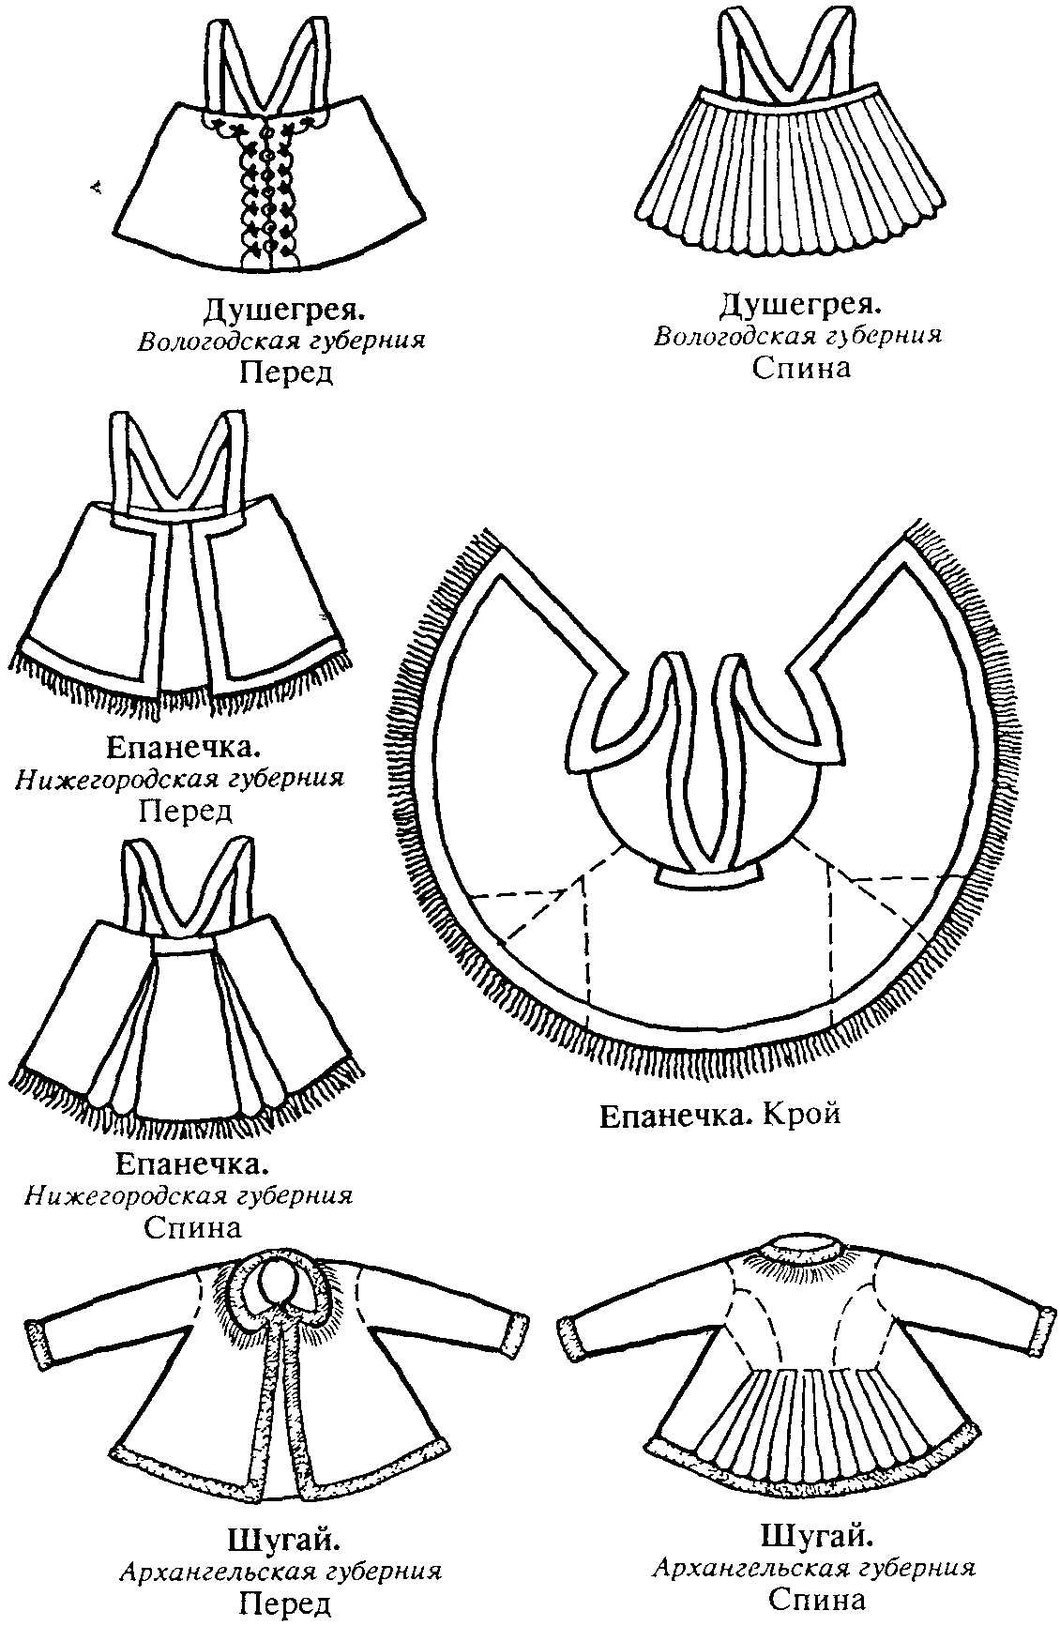 Епанечка выкройка в русском народном костюме